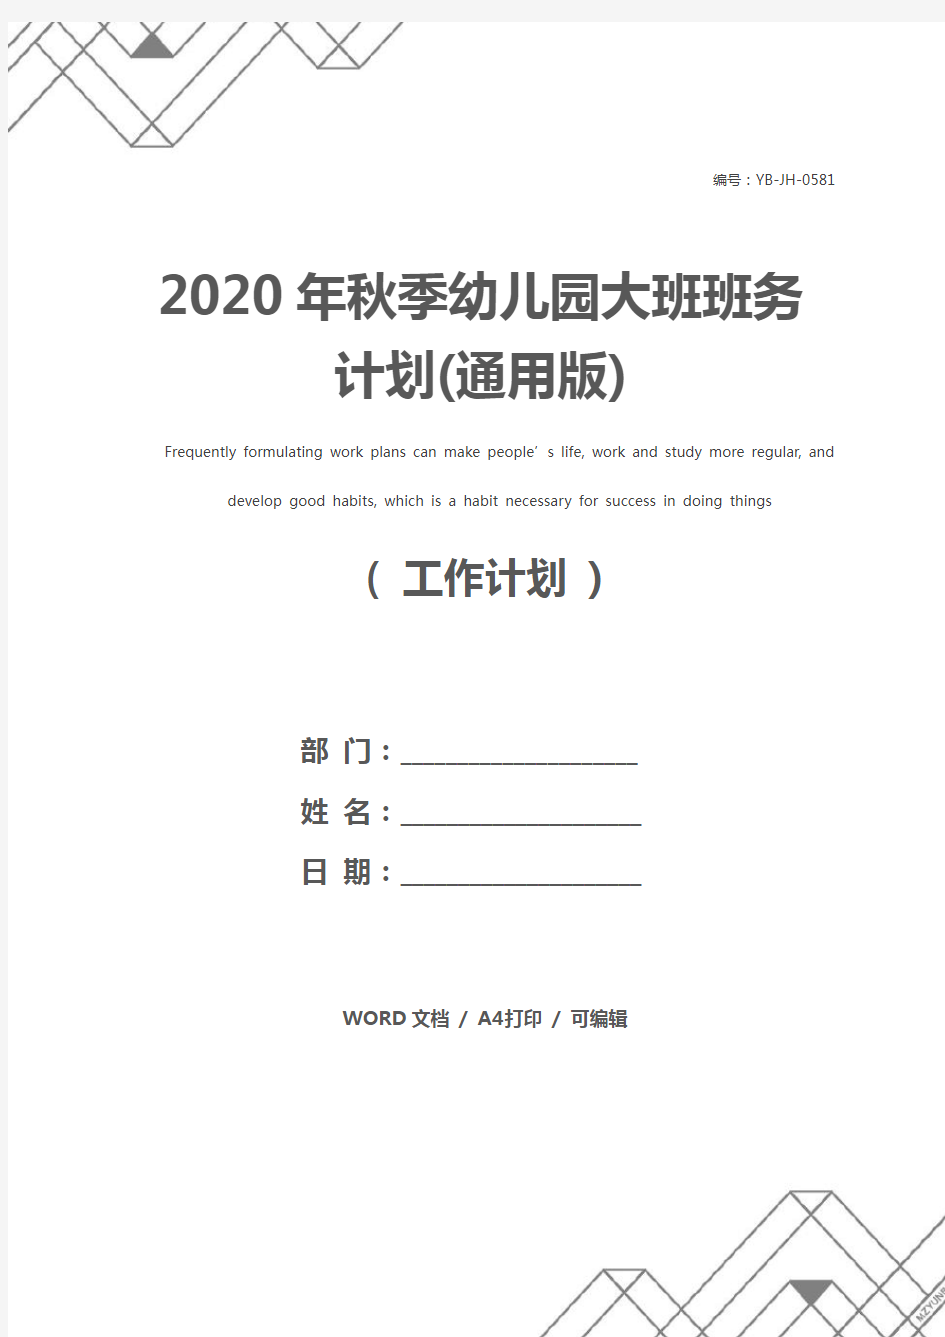 2020年秋季幼儿园大班班务计划(通用版)